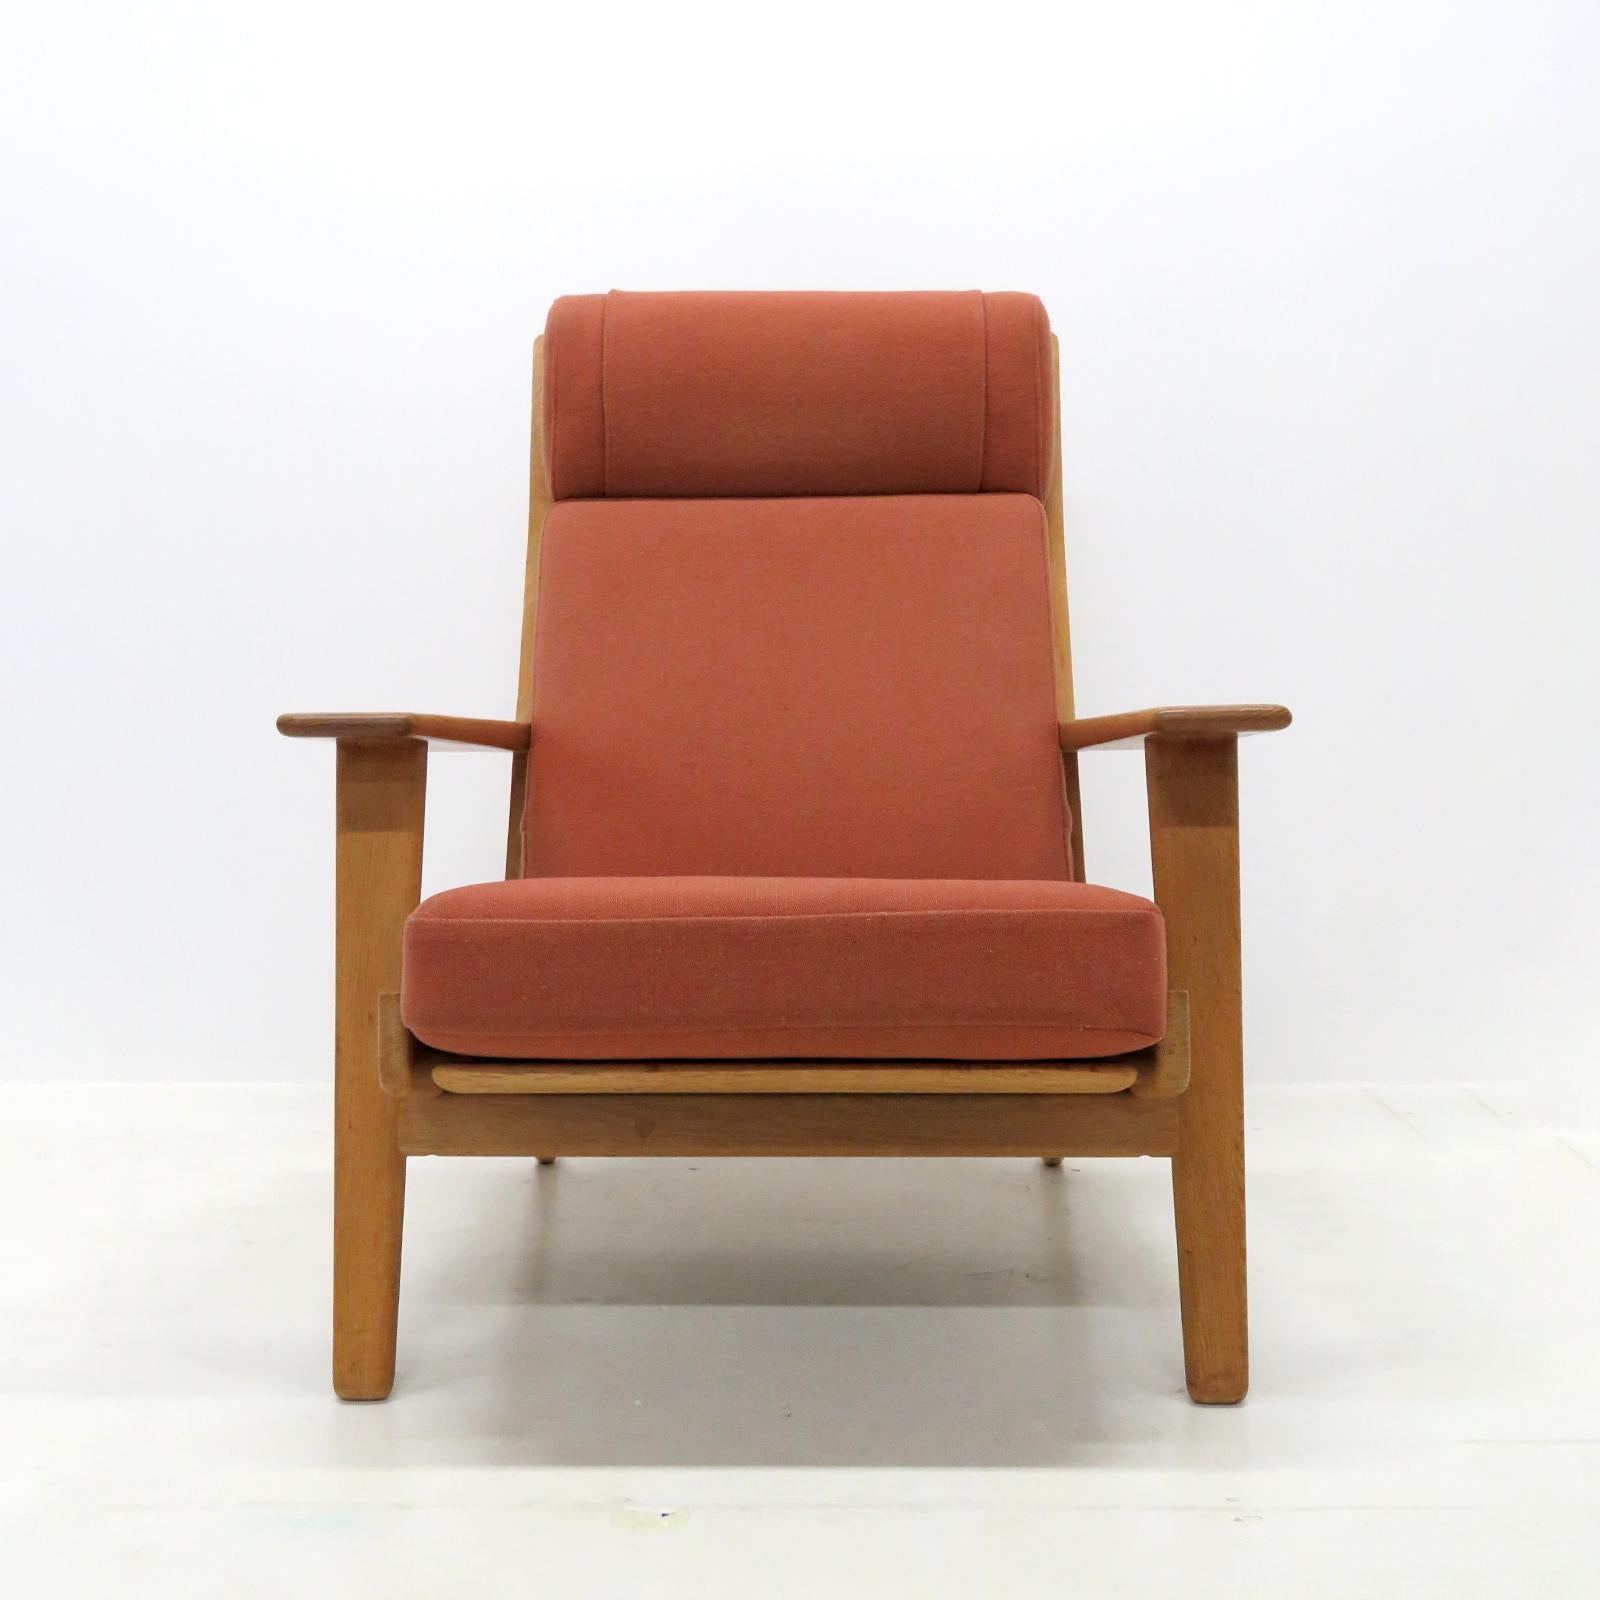 Magnifique chaise longue à haut dossier GE290A par Hans J Wegner pour GETAMA, structure en chêne massif avec belle patine et coussins originaux en tissu de laine marron clair, marqué.